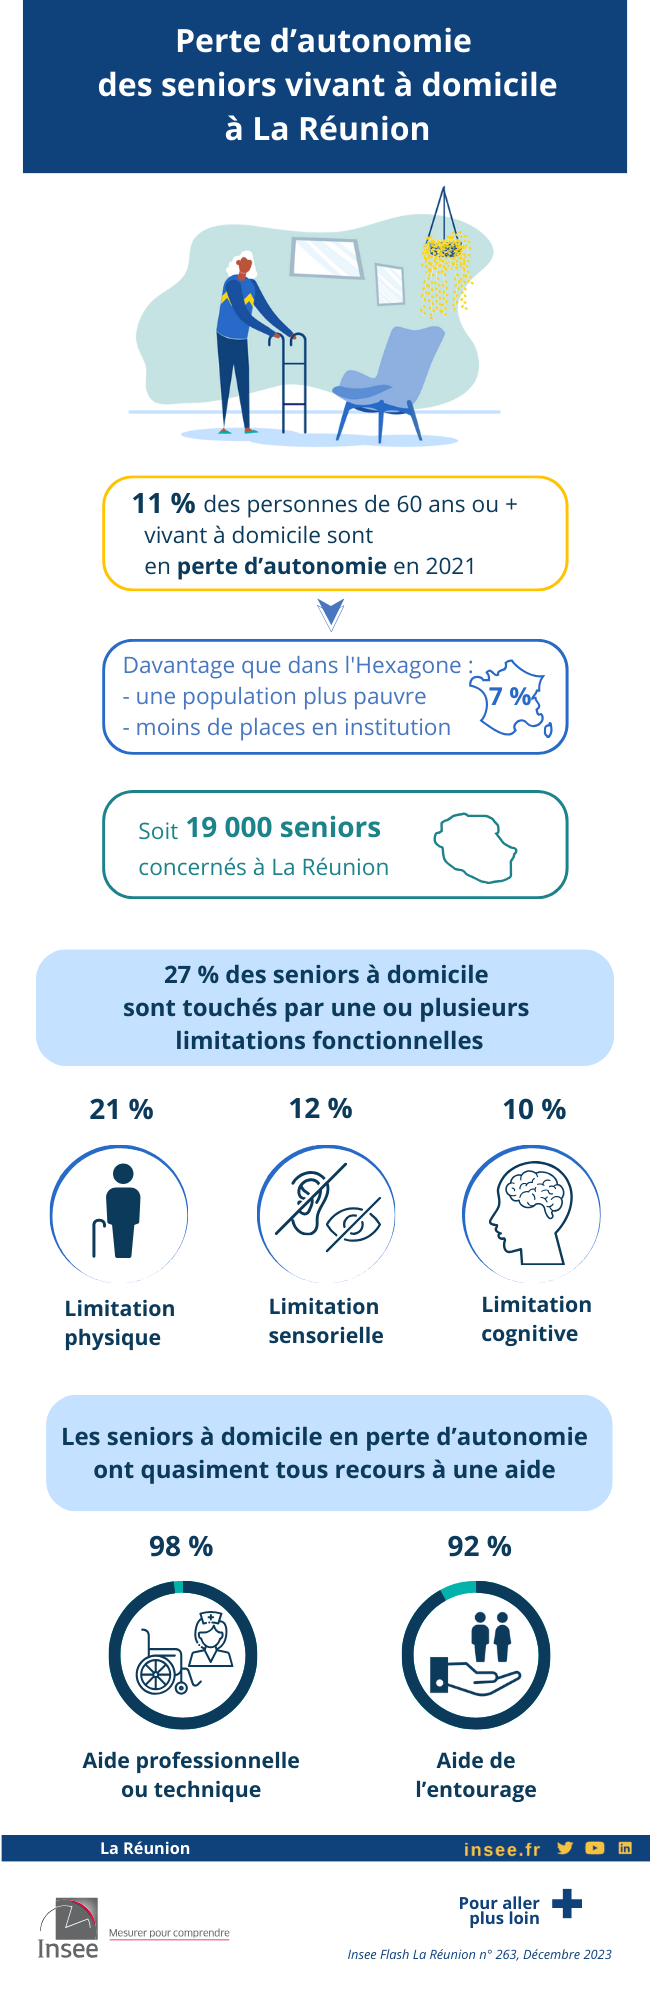 Infographie sur la perte d’autonomie en 2021 des seniors à La Réunion